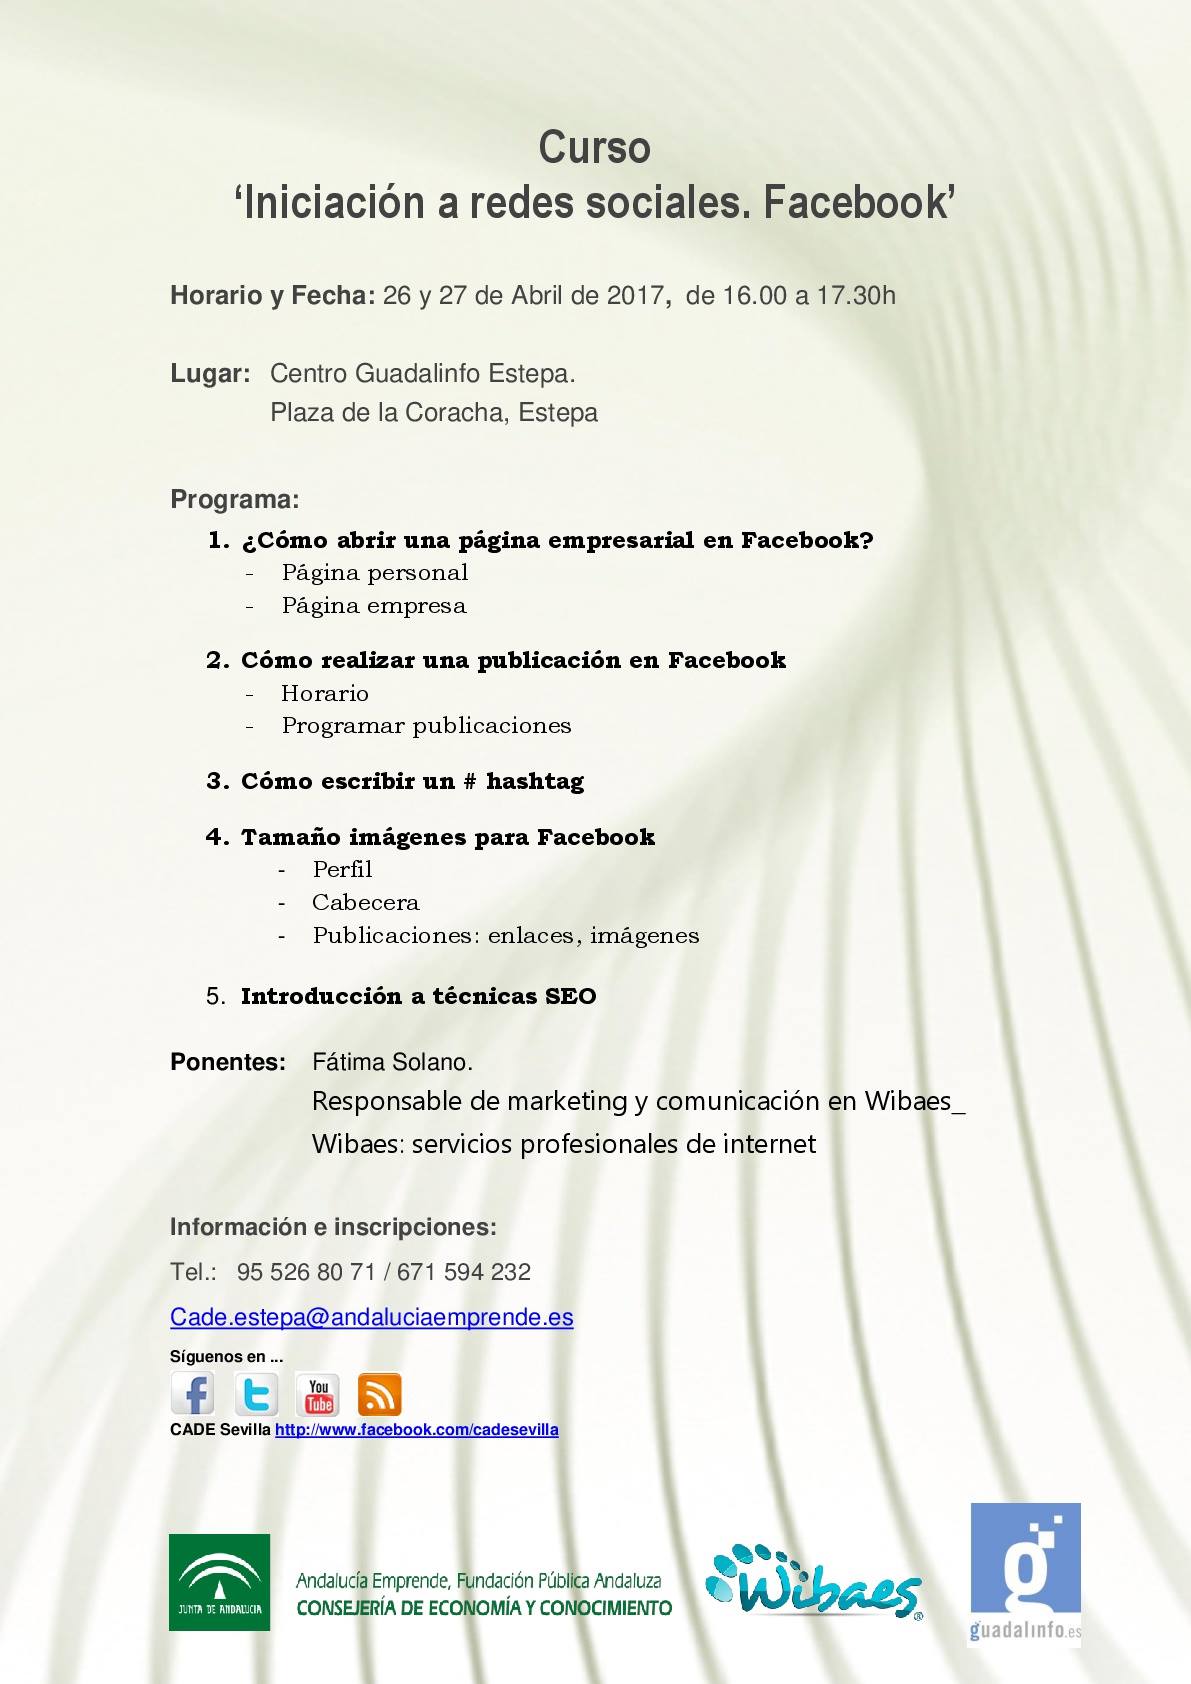 Curso de iniciación a la red social Facebook en Estepa